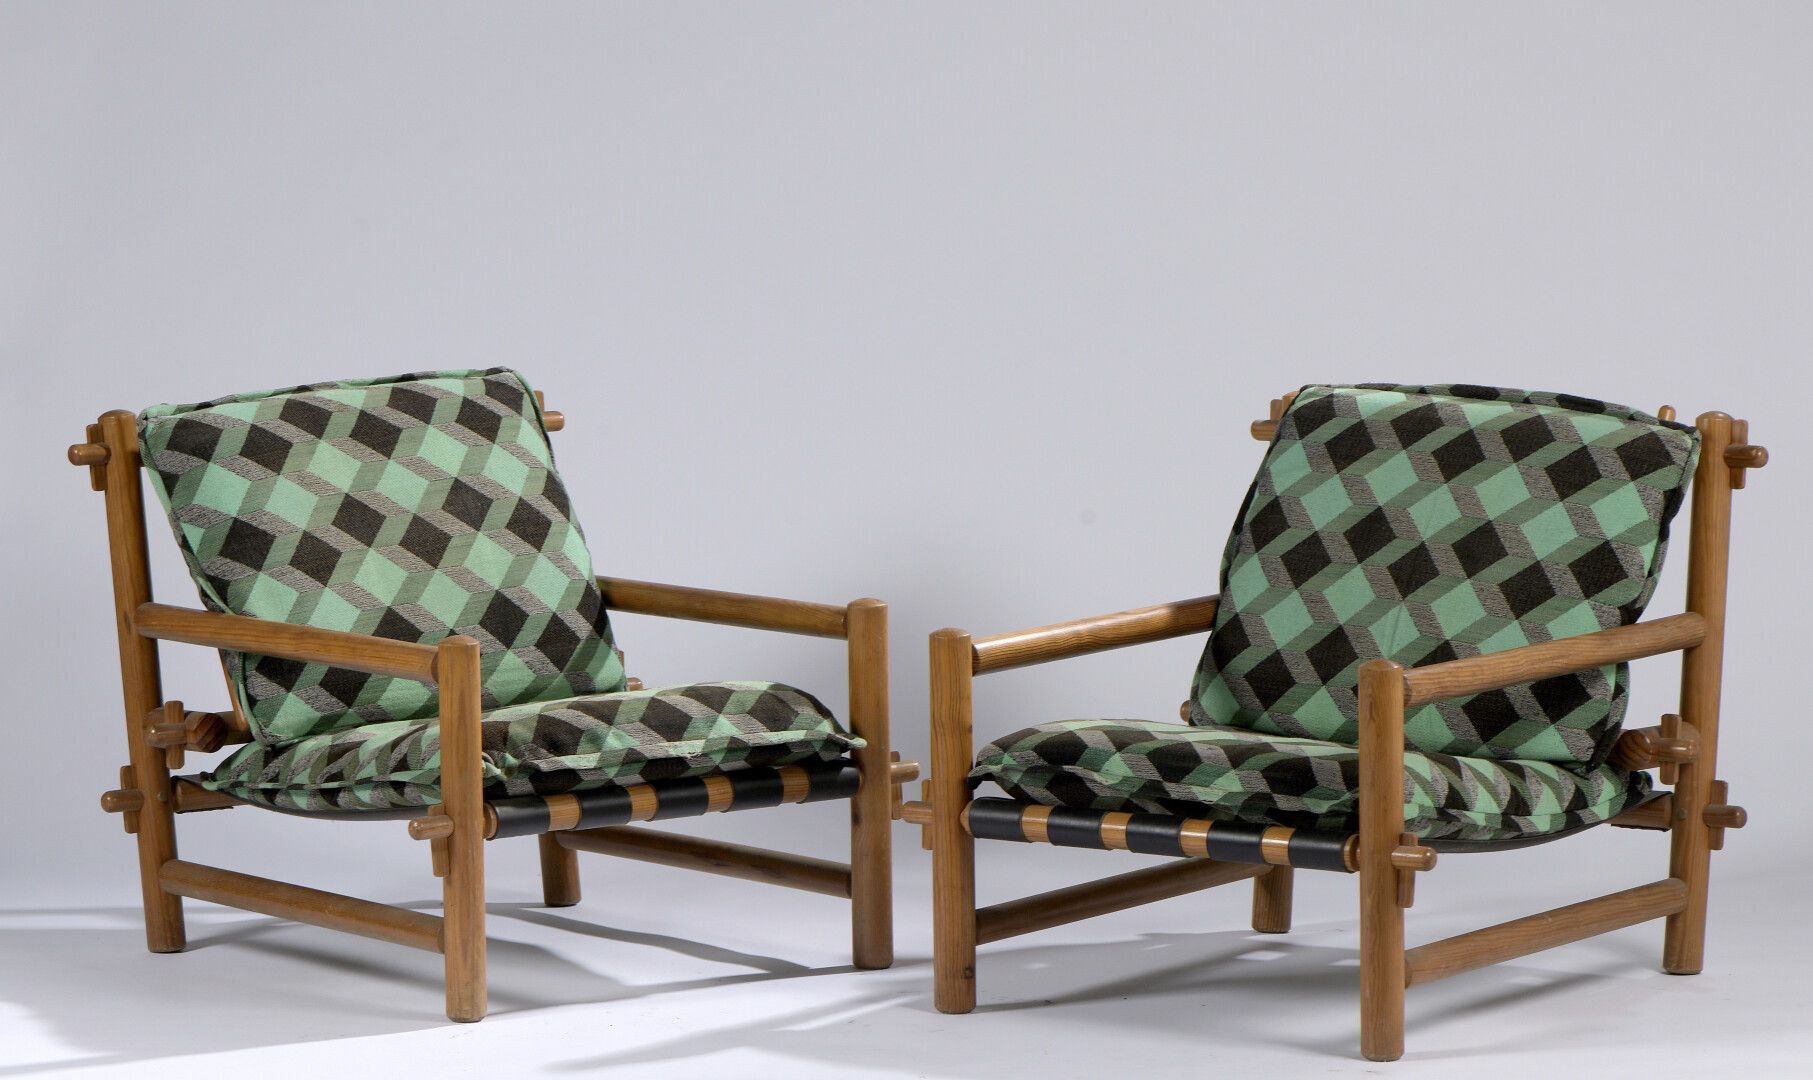 Null 一对松木钉子扶手椅，带皮筋，泡沫坐垫上覆盖着绿色和黑色的格子布。约1960年。

H.70.8 W. 67 D. 76 cm。

内饰中的小孔。